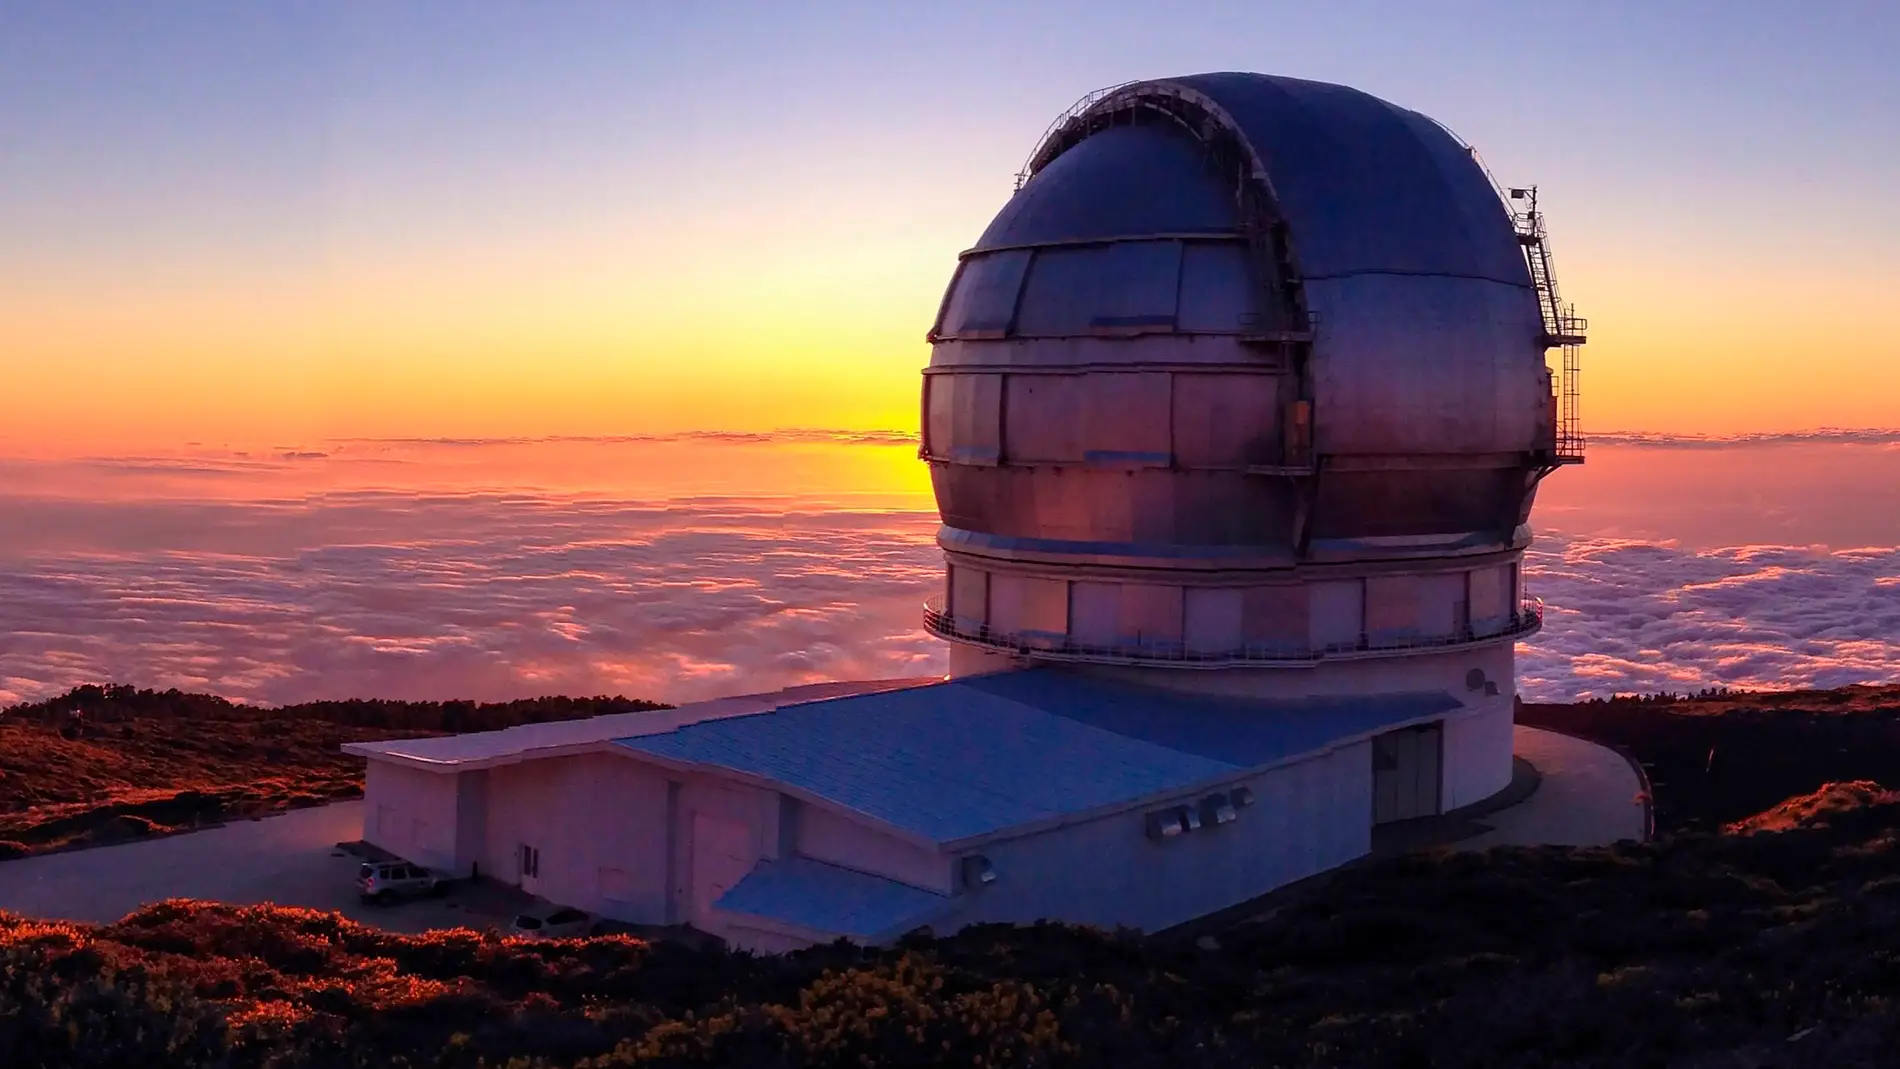 La ceniza del volcan obliga a cerrar los telescopios del IAC en La Palma